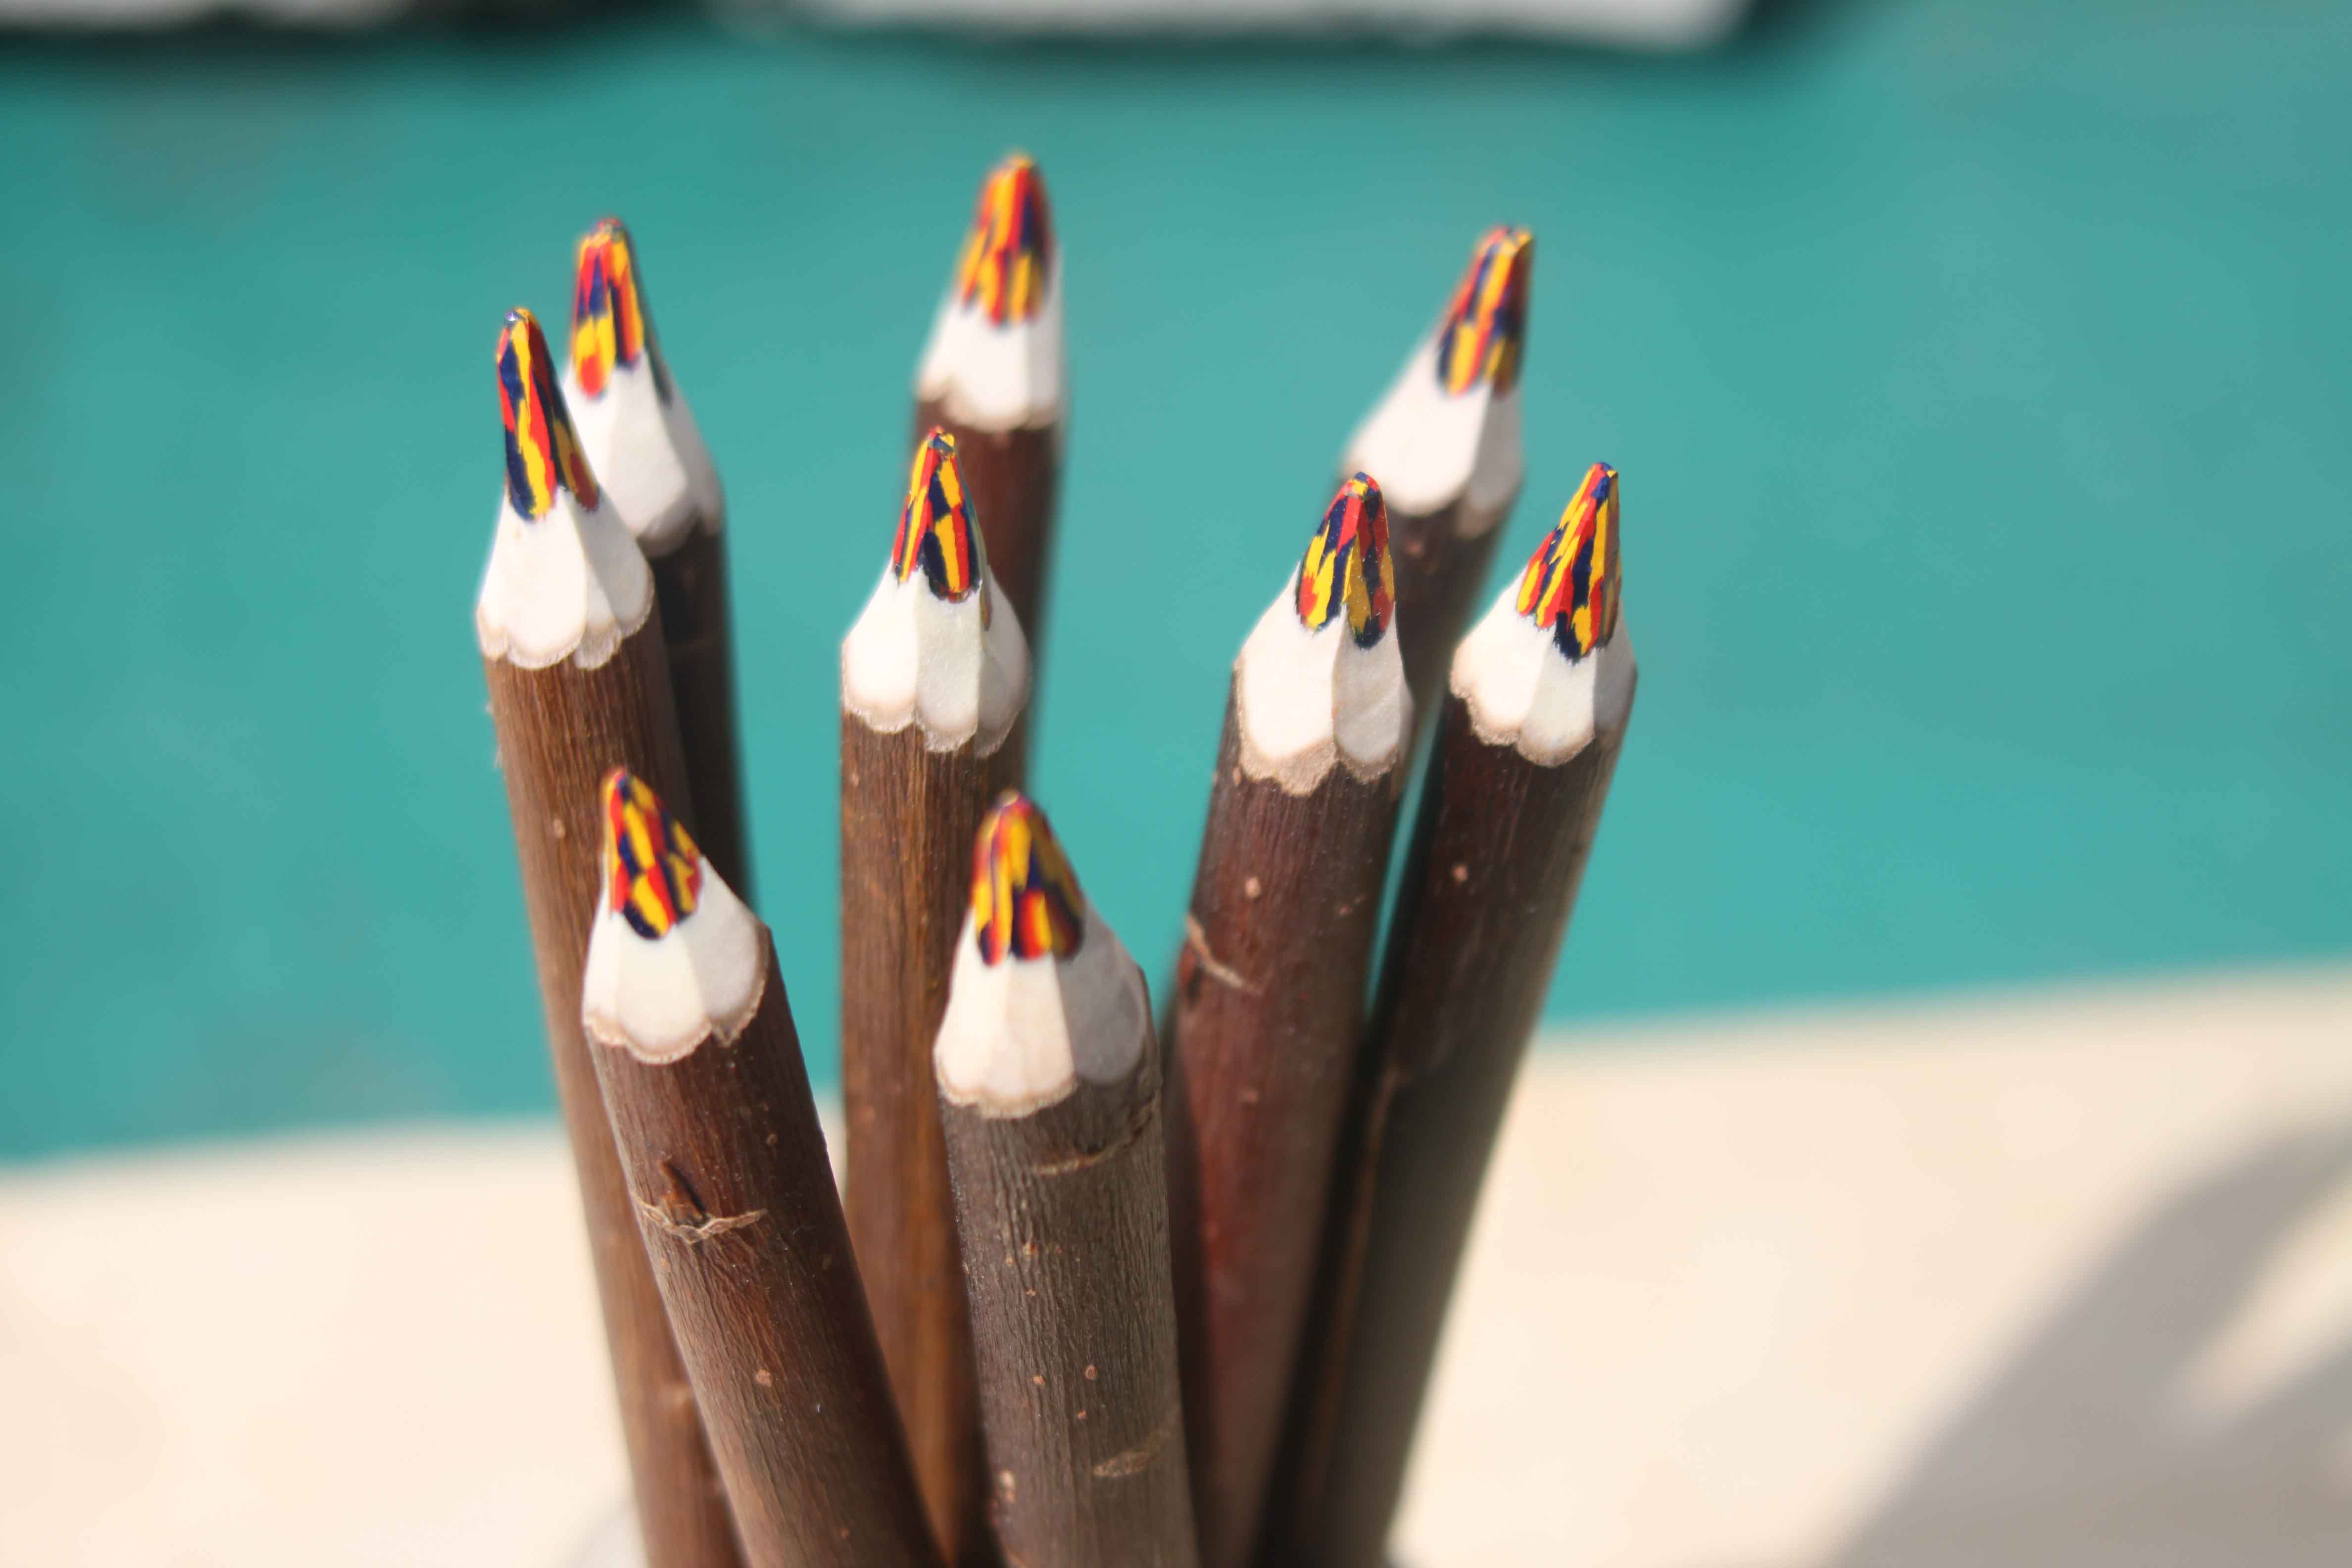 Le crayon magique « L'atelier du crayon